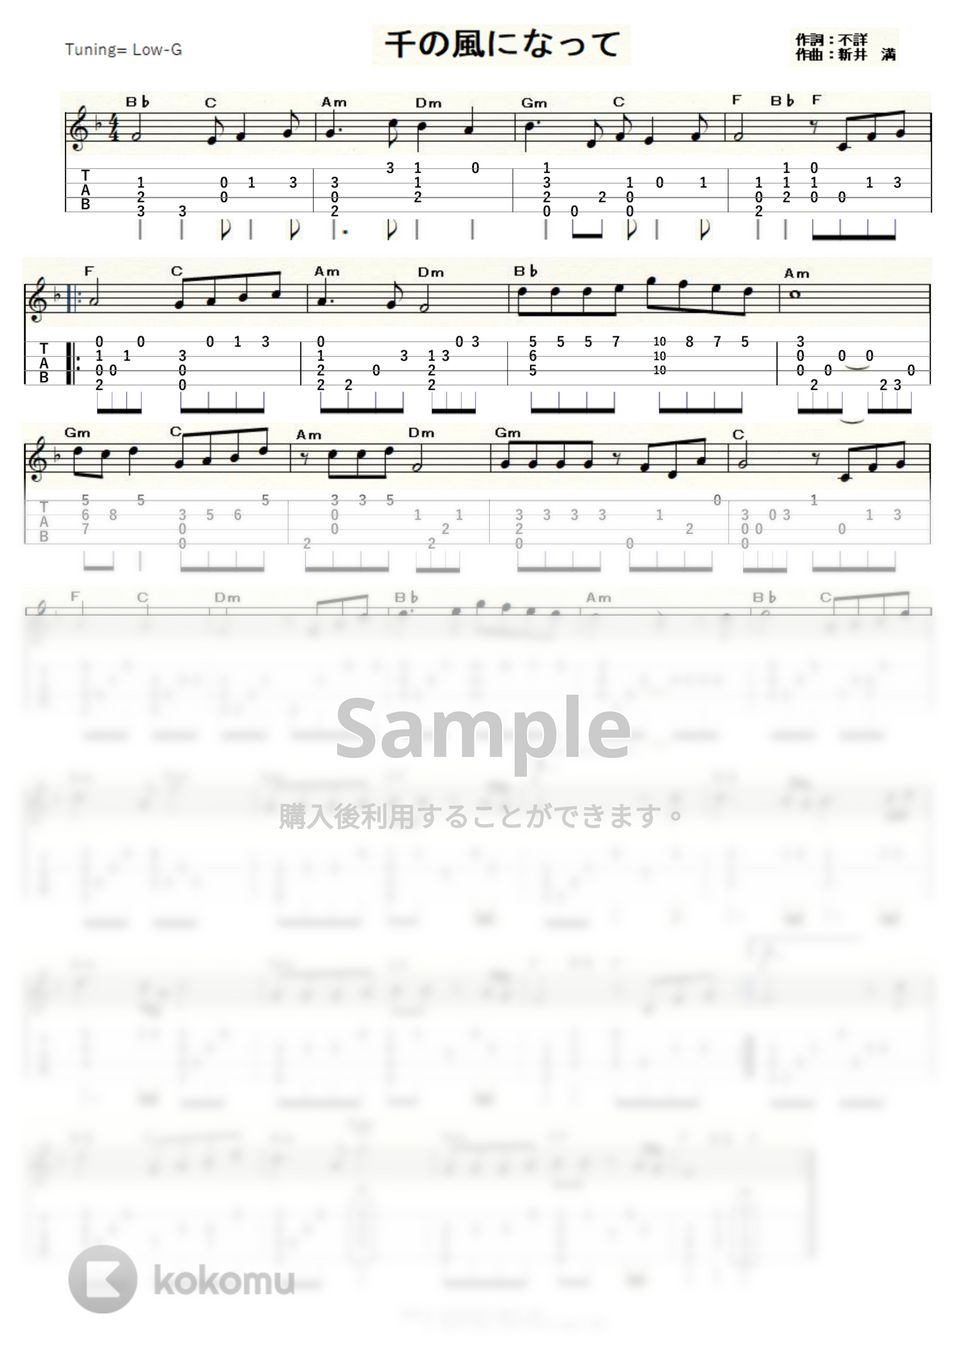 秋川雅史 - 千の風になって (ｳｸﾚﾚｿﾛ / Low-G / 中級) by ukulelepapa